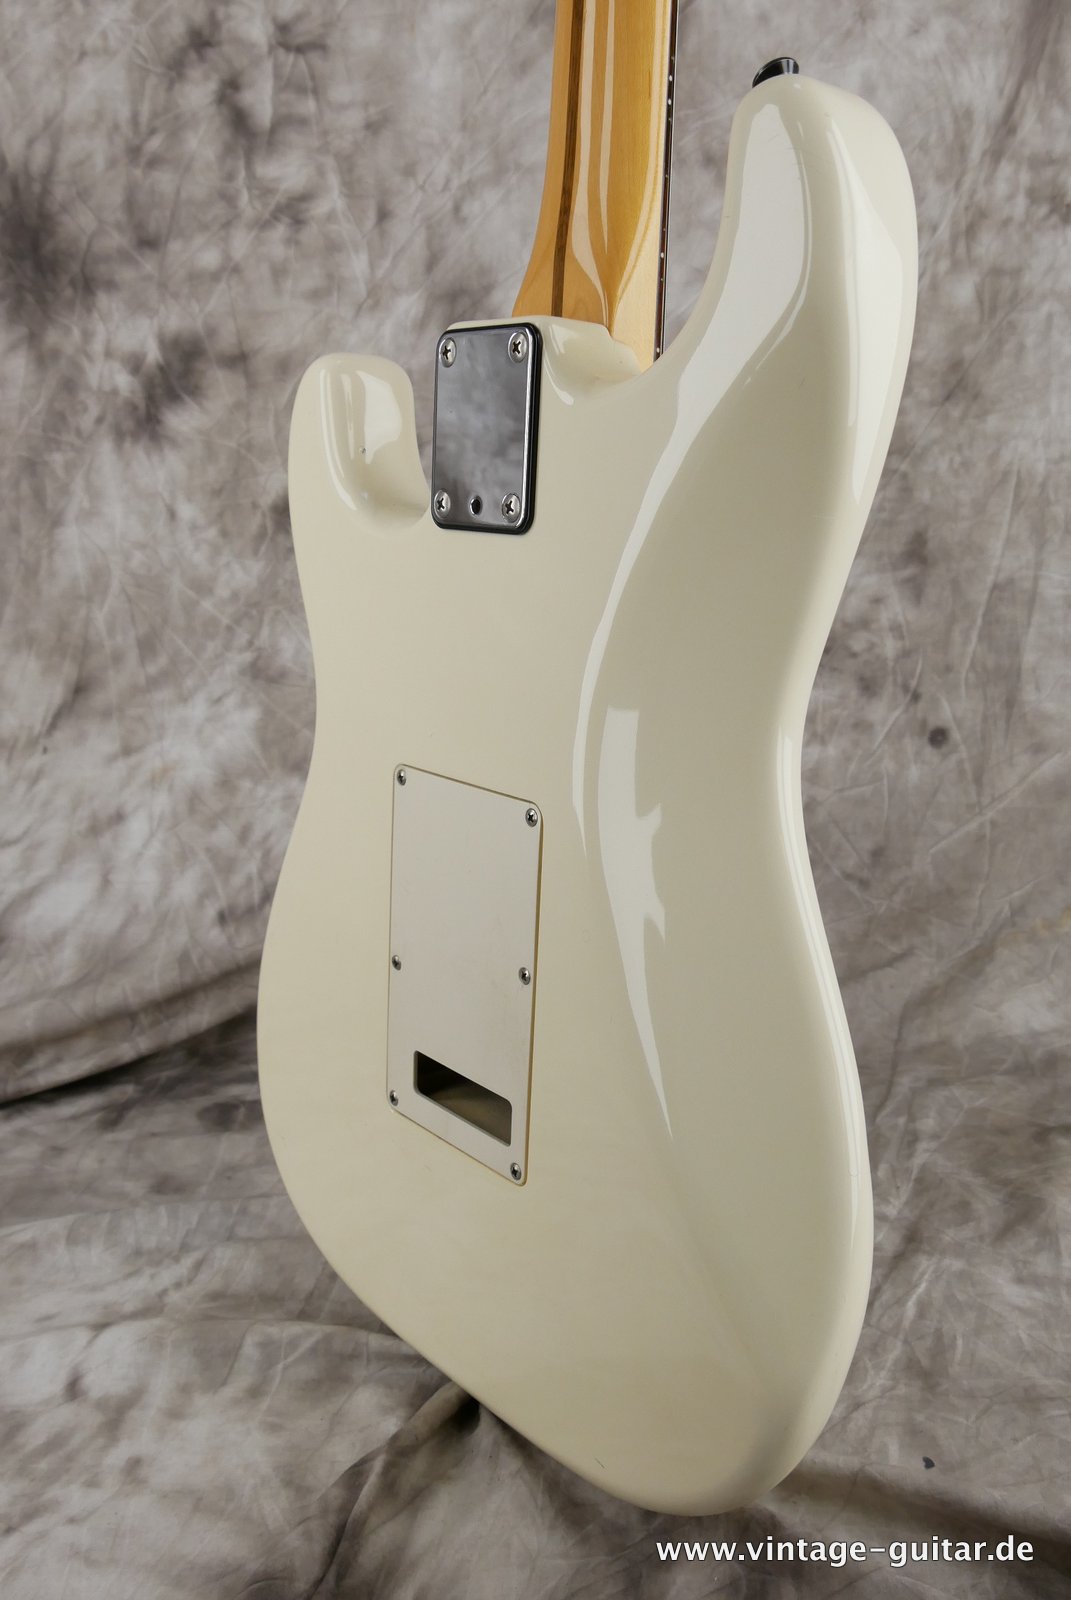 Fender-Stratocaster-MIJ-1985-Kahler-Tremolo-white-020.JPG